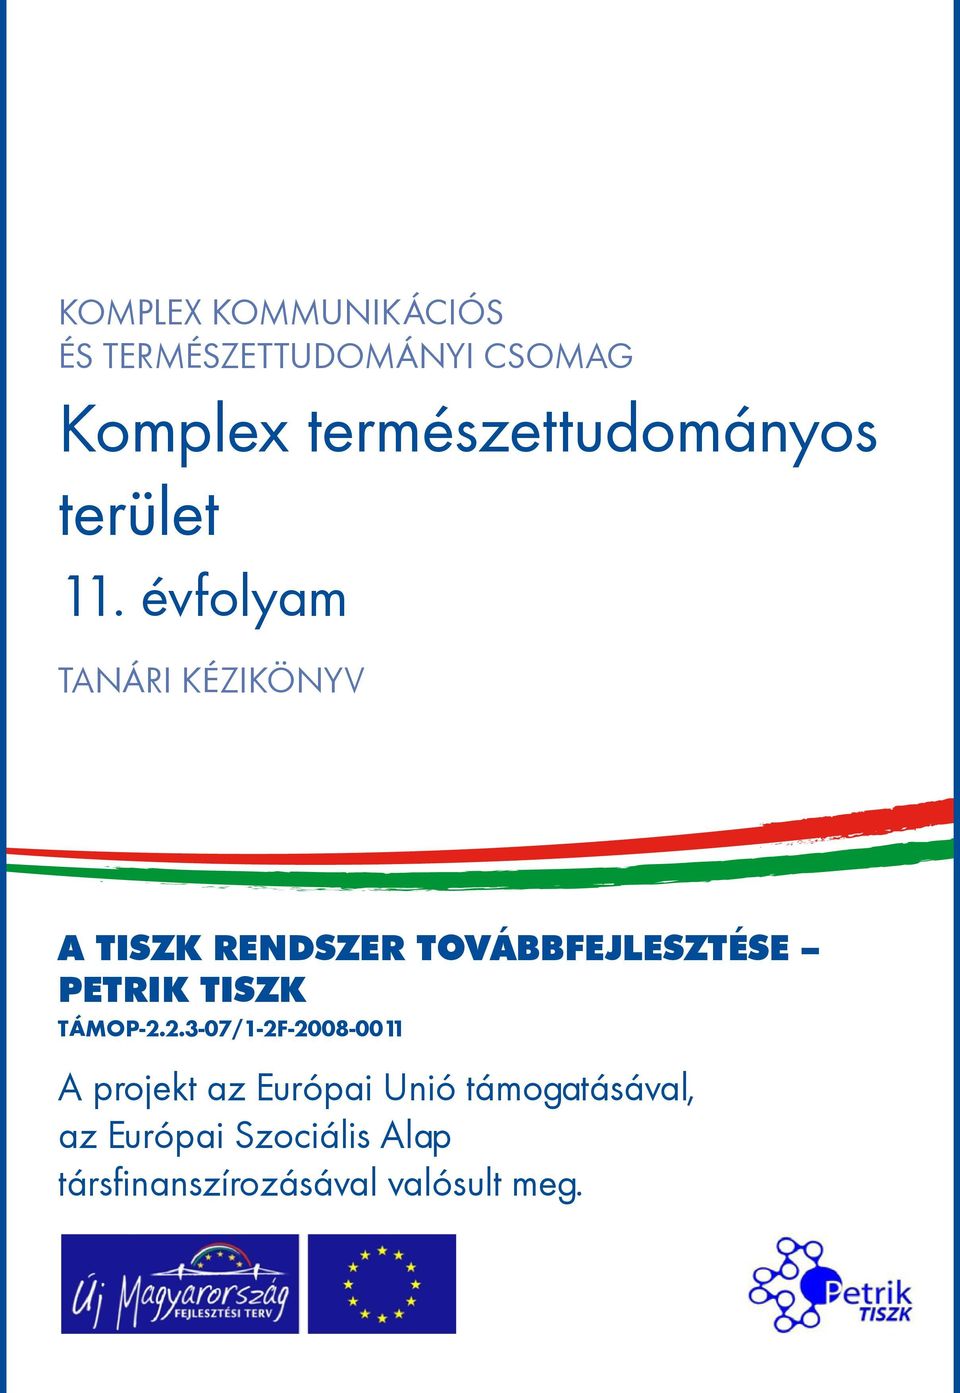 évfolyam tanári kézikönyv A TISZK rendszer továbbfejlesztése Petrik TISZK